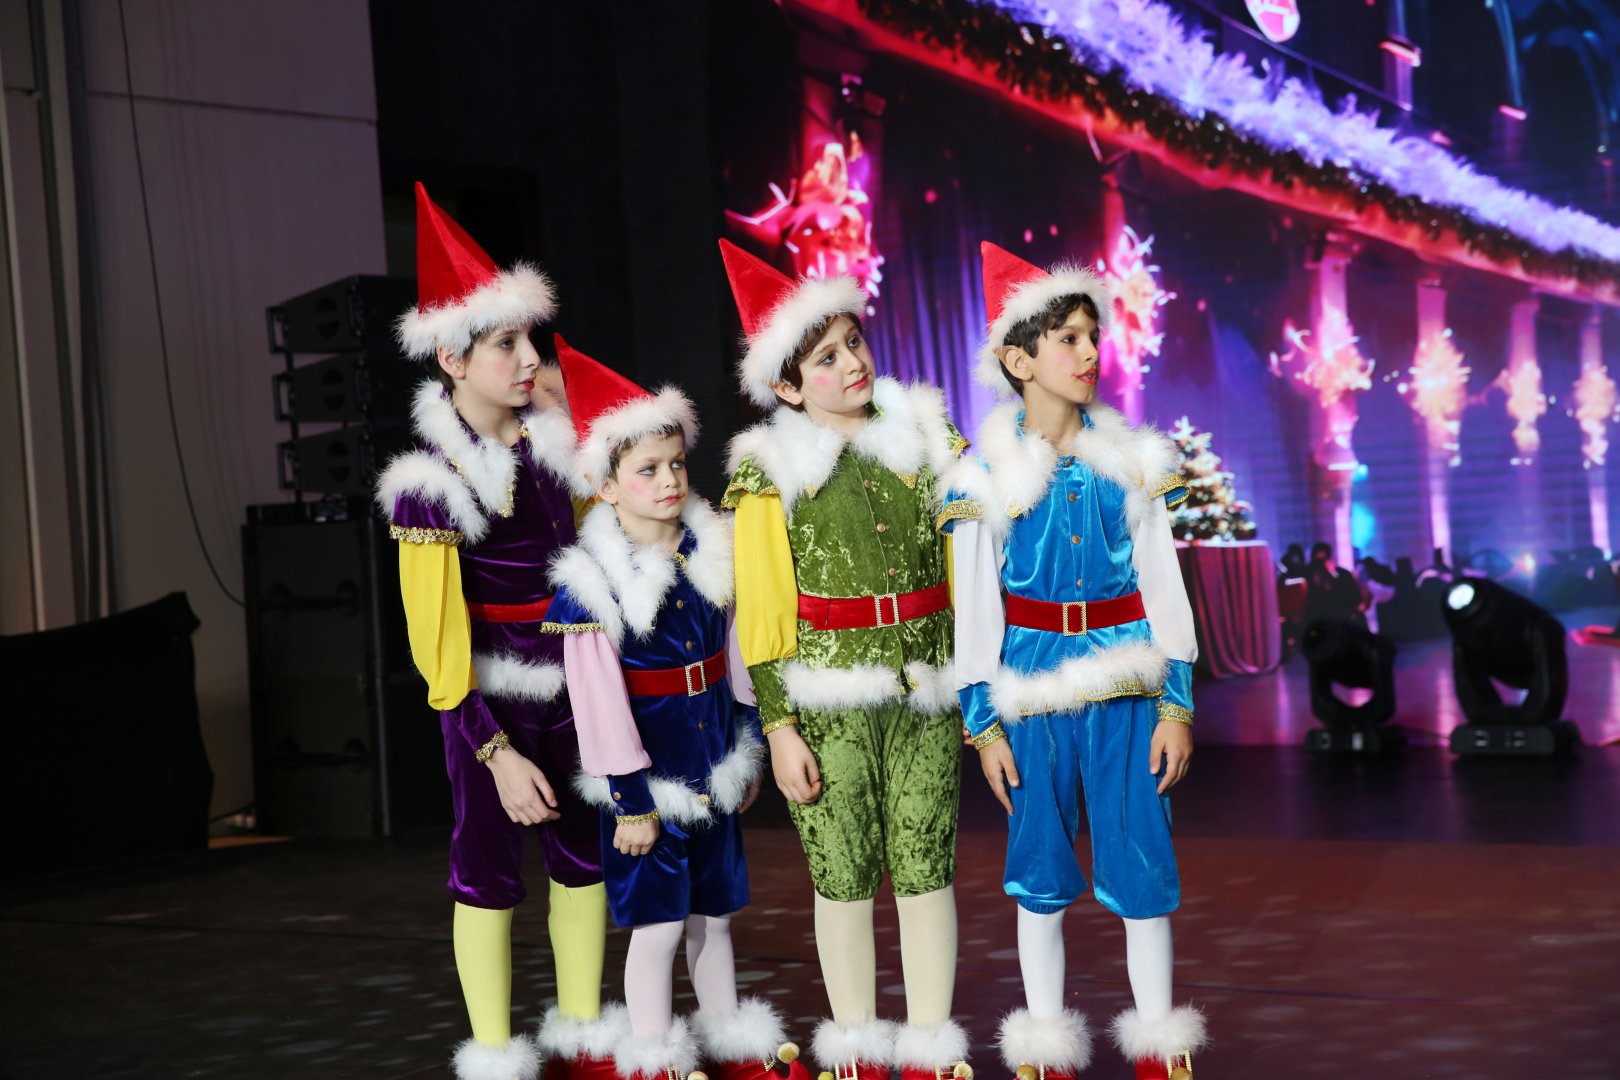 Heydar Aliyev Foundation organizes festive celebration for children (PHOTO)